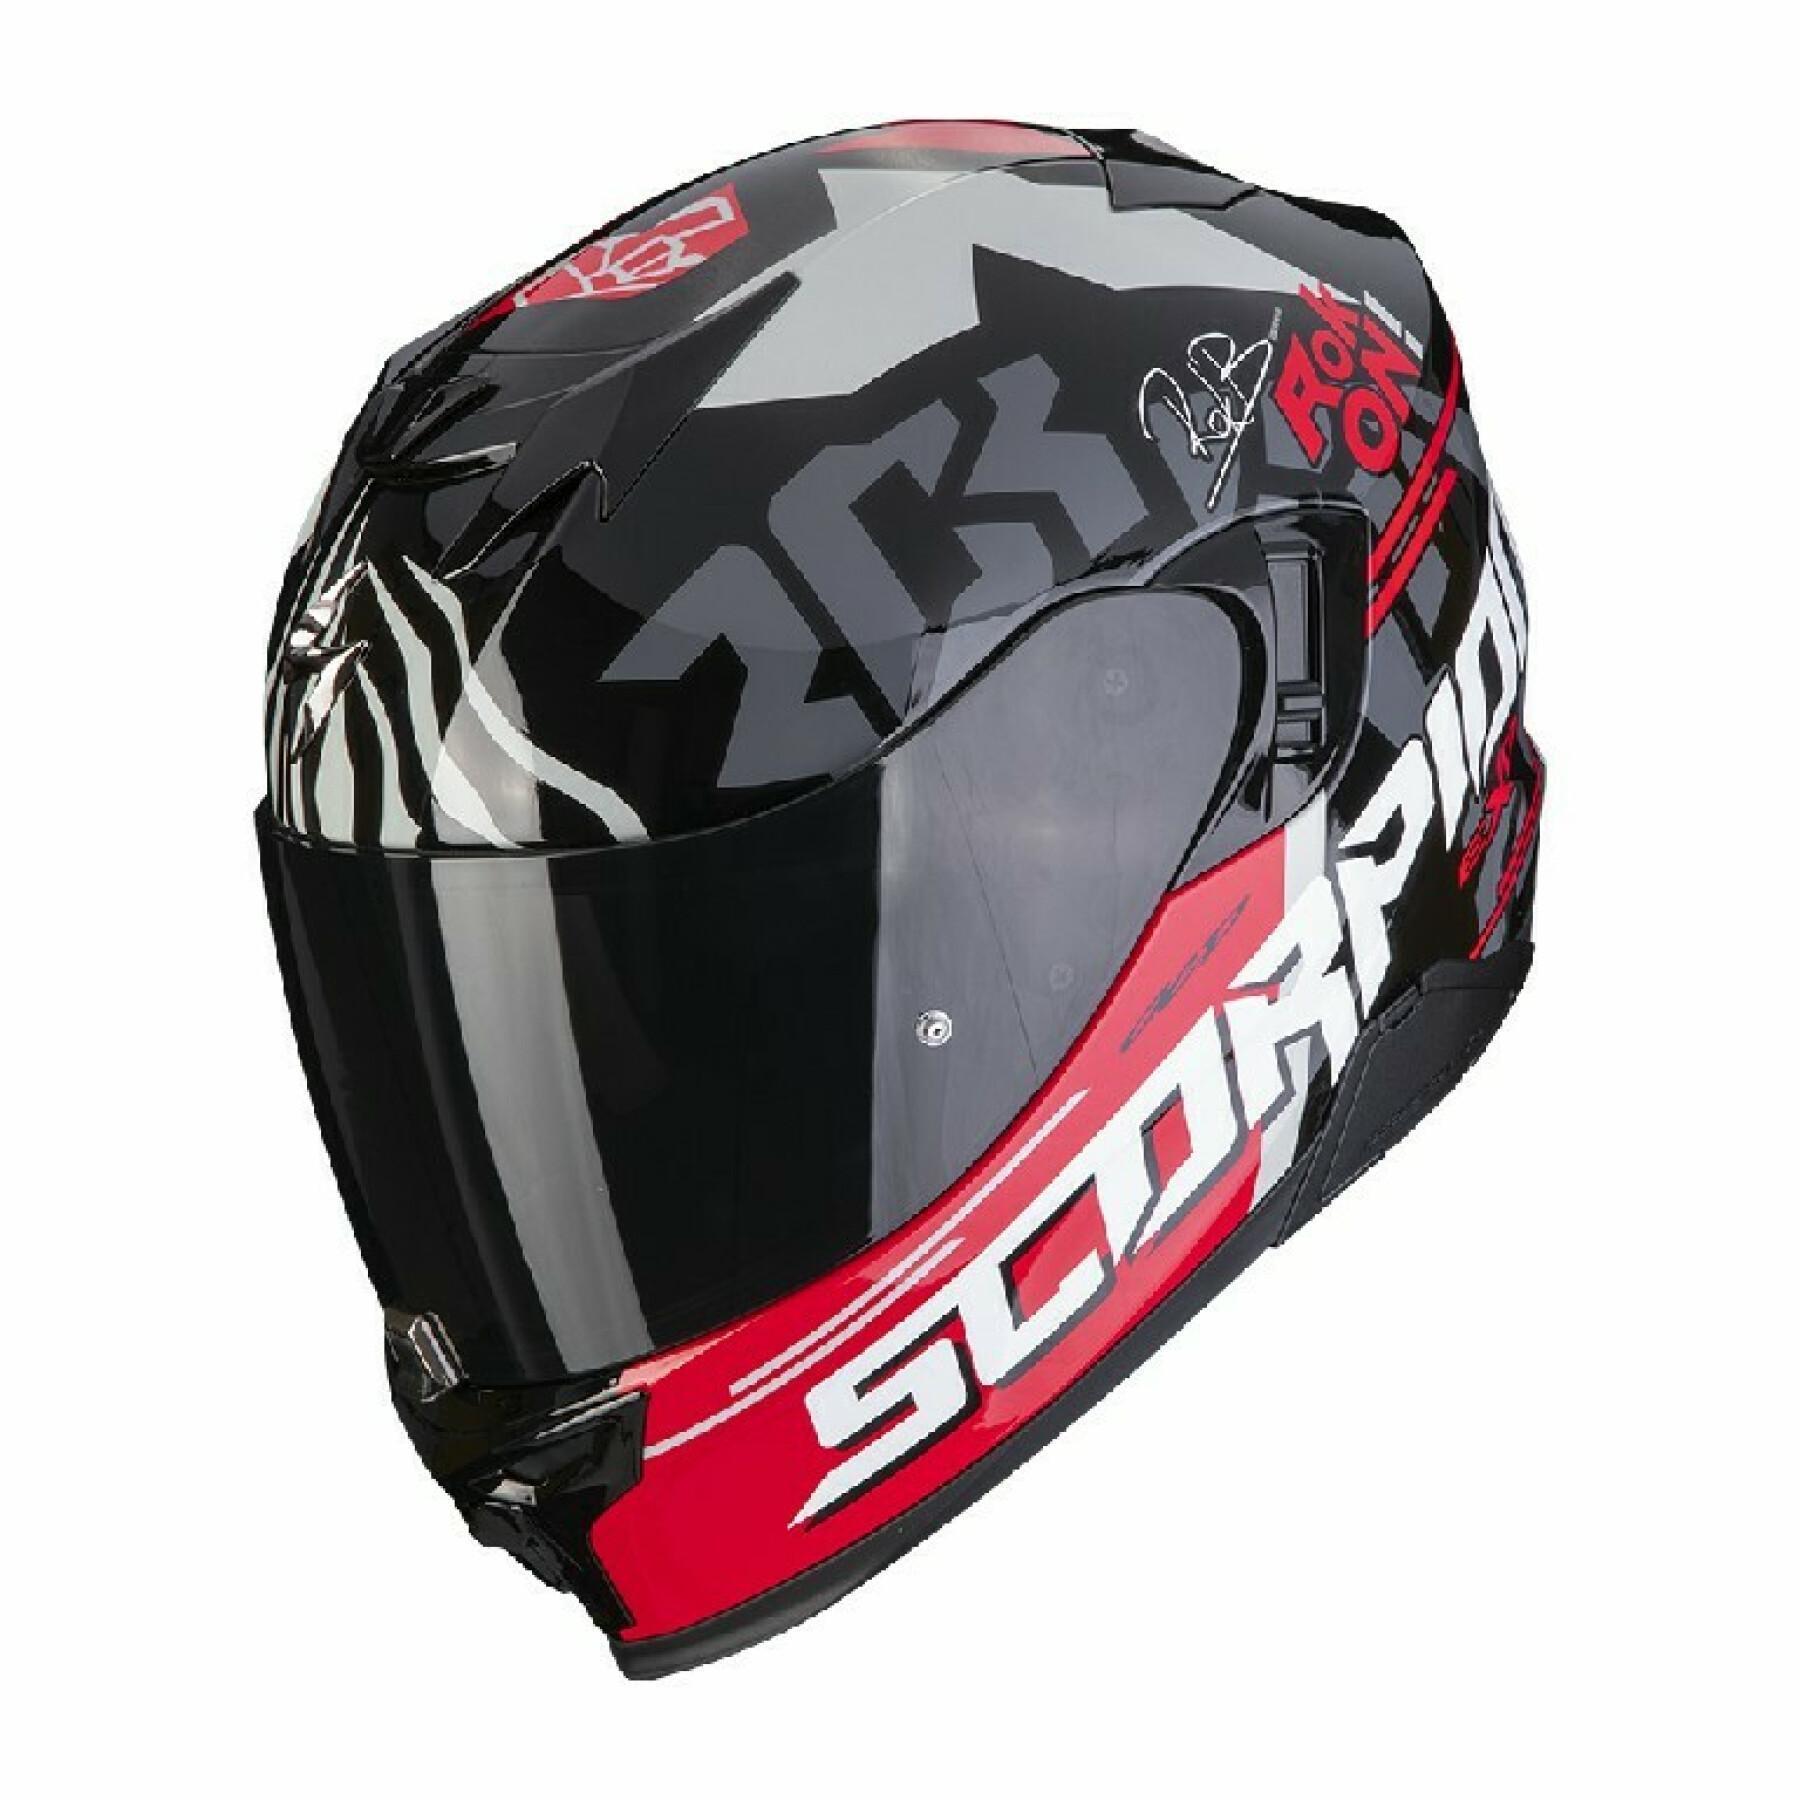 Full face helmet Scorpion Exo-520 Air rok BAGOROS